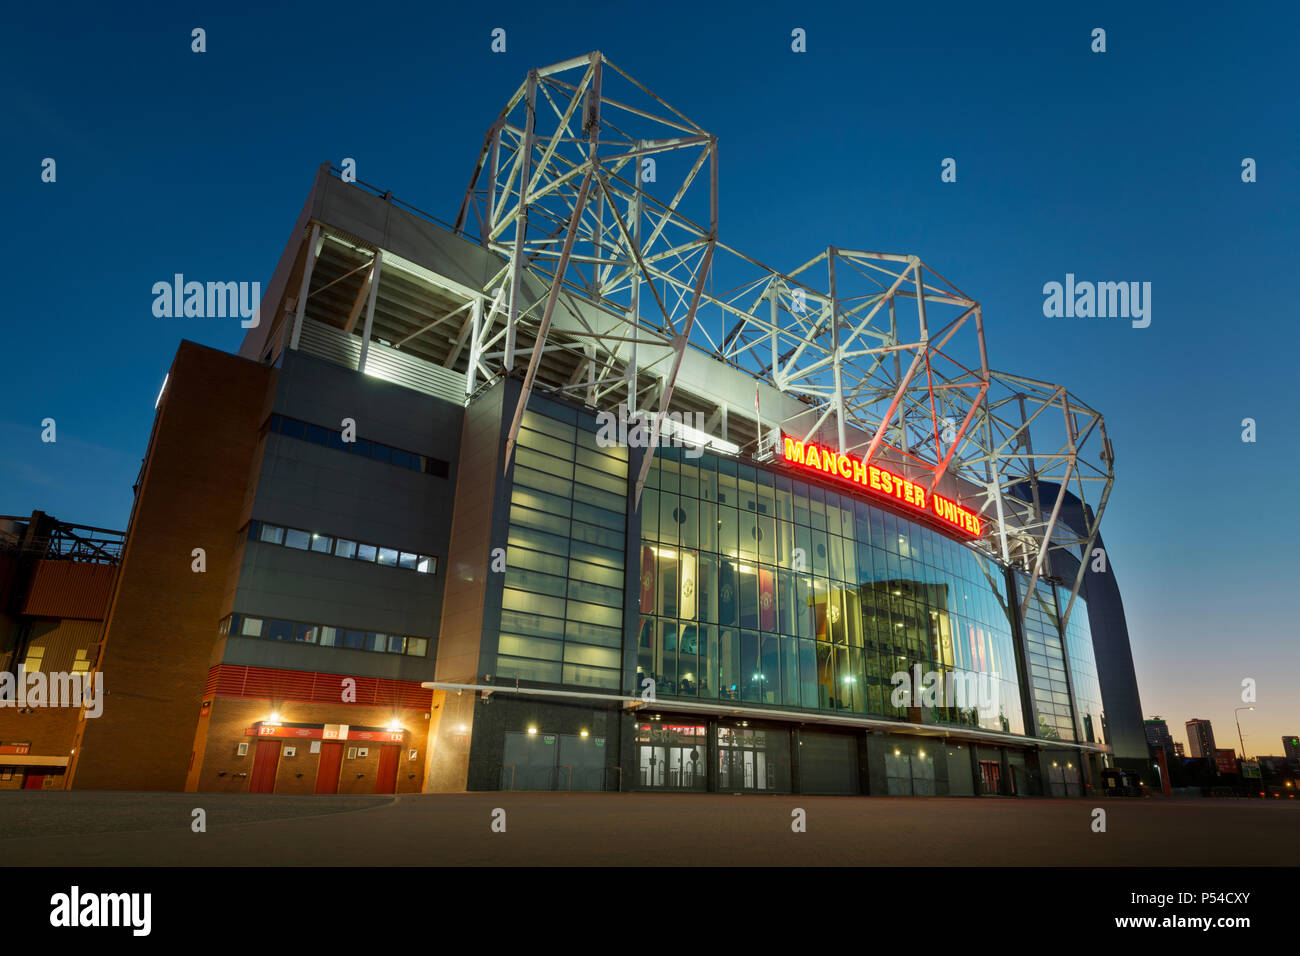 Das Old Trafford Stadium, die Heimat des Manchester United Football Club, während einem Sommerabend (nur redaktionelle Nutzung). Stockfoto